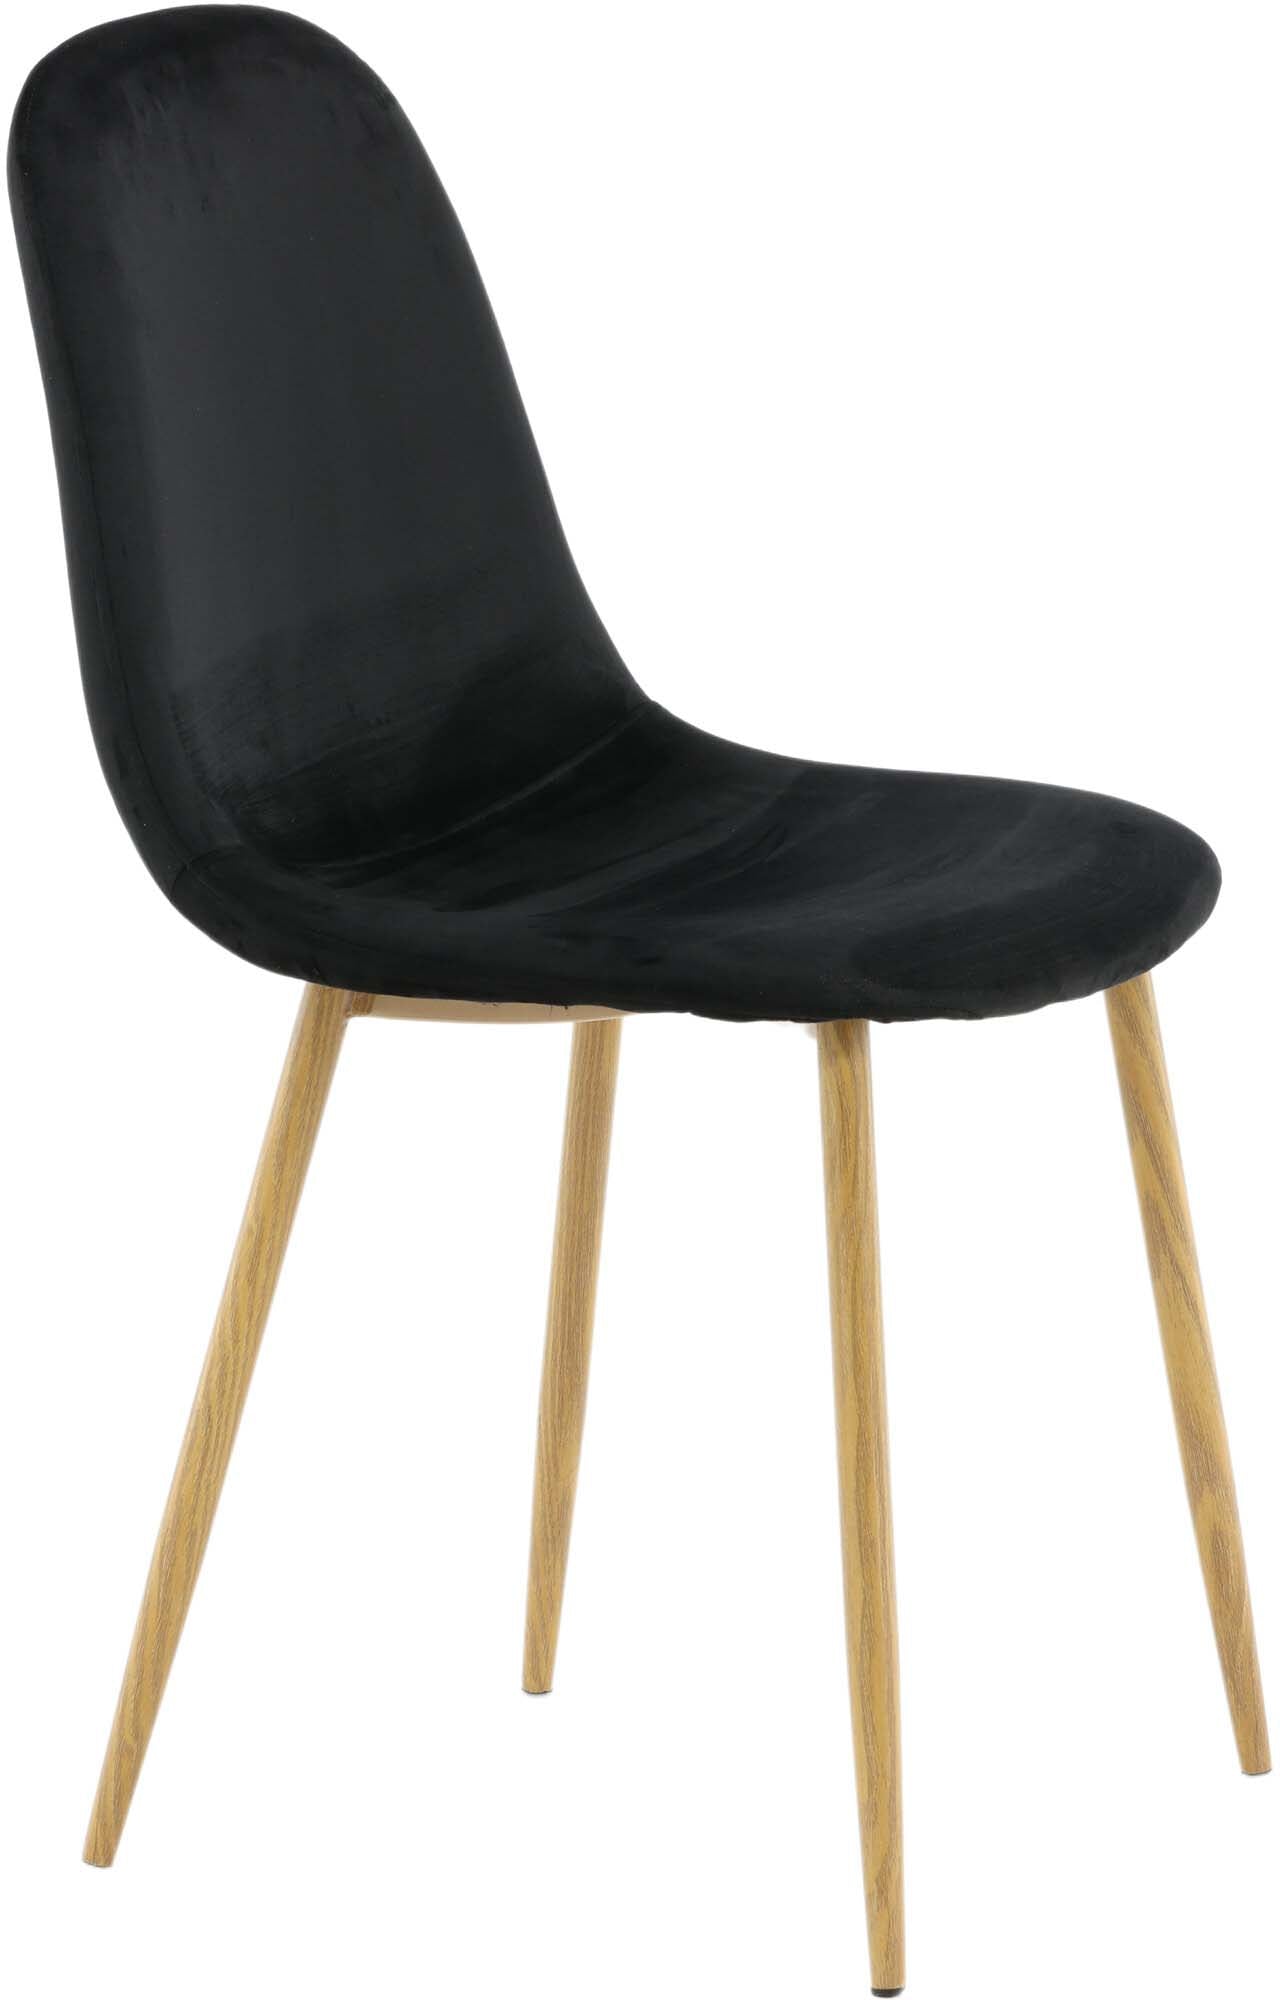 Polar Stuhl in Schwarz/Eicheimitat präsentiert im Onlineshop von KAQTU Design AG. Stuhl ist von Venture Home